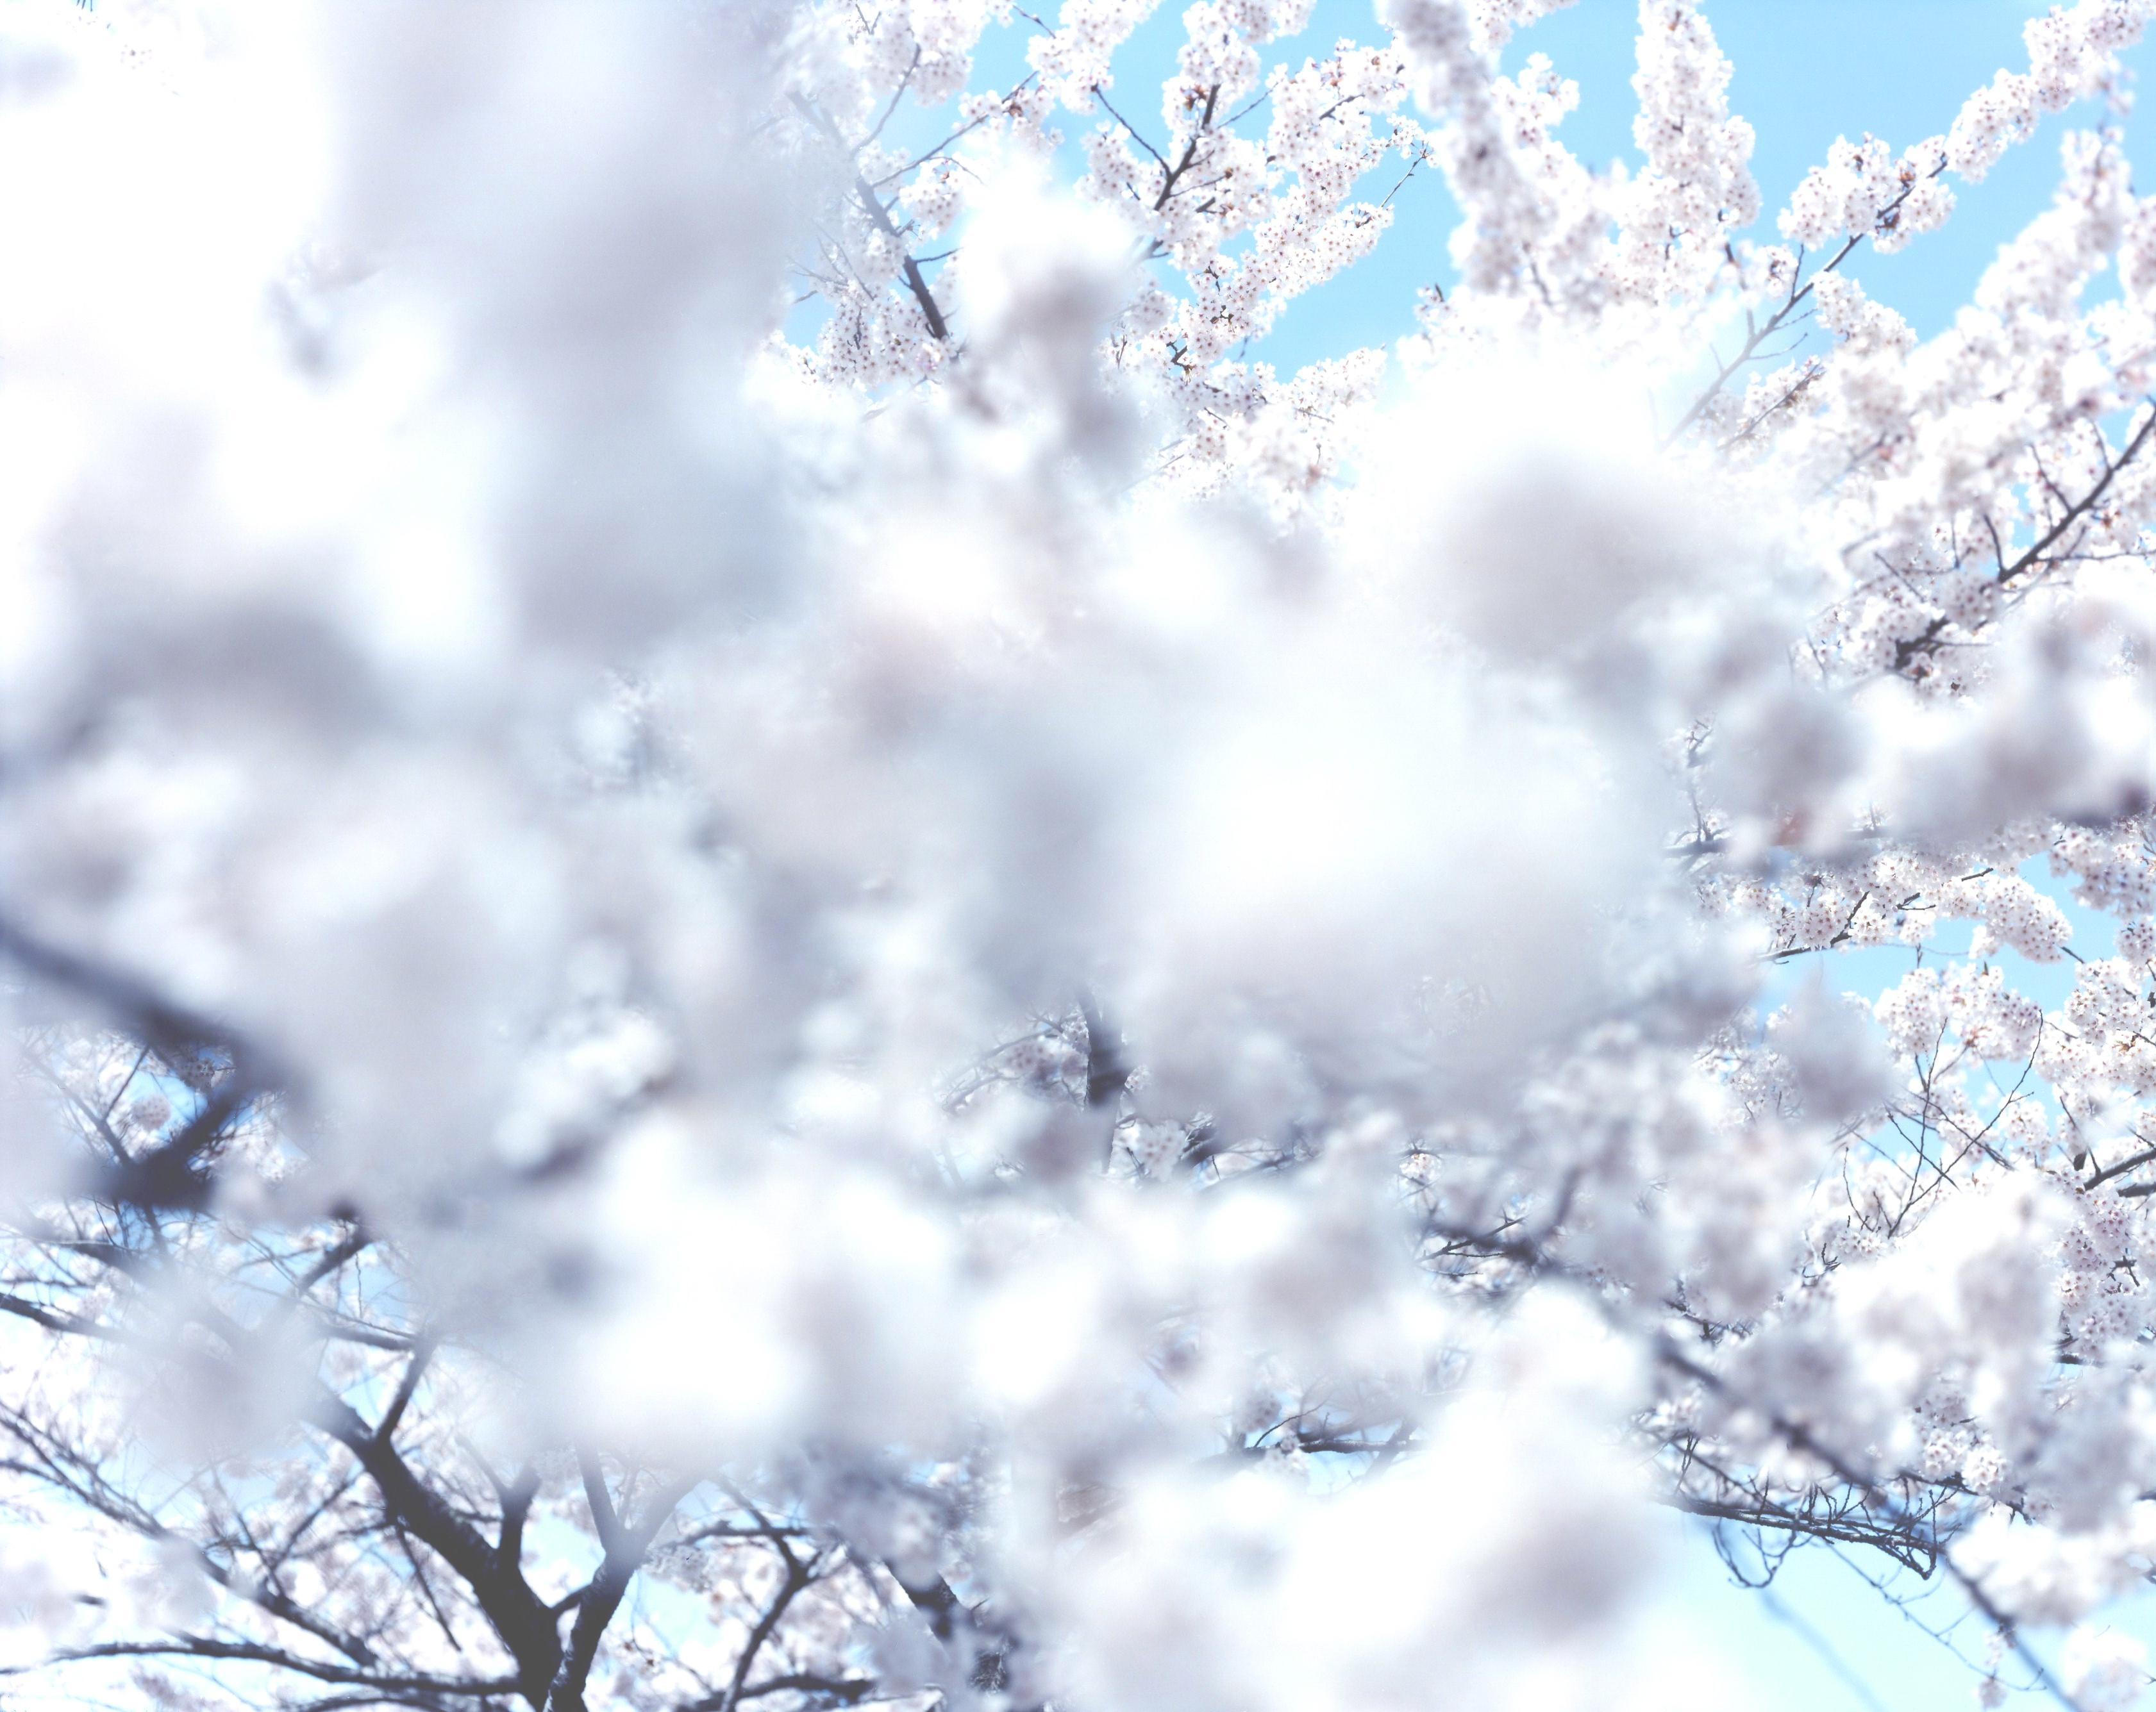 RISAKU SUZUKI (*1963, Japan)
SAKURA 10,4-66
2010
Chromogener Druck
Blatt 120 x 155 cm (47 1/4 x 61 in.)
Auflage von 5; Ed. Nr. 2/5
Gerahmt

Das Sakura-Fest (japanische Bezeichnung für "Kirschblüten") beginnt im zeitigen Frühjahr und inspiriert